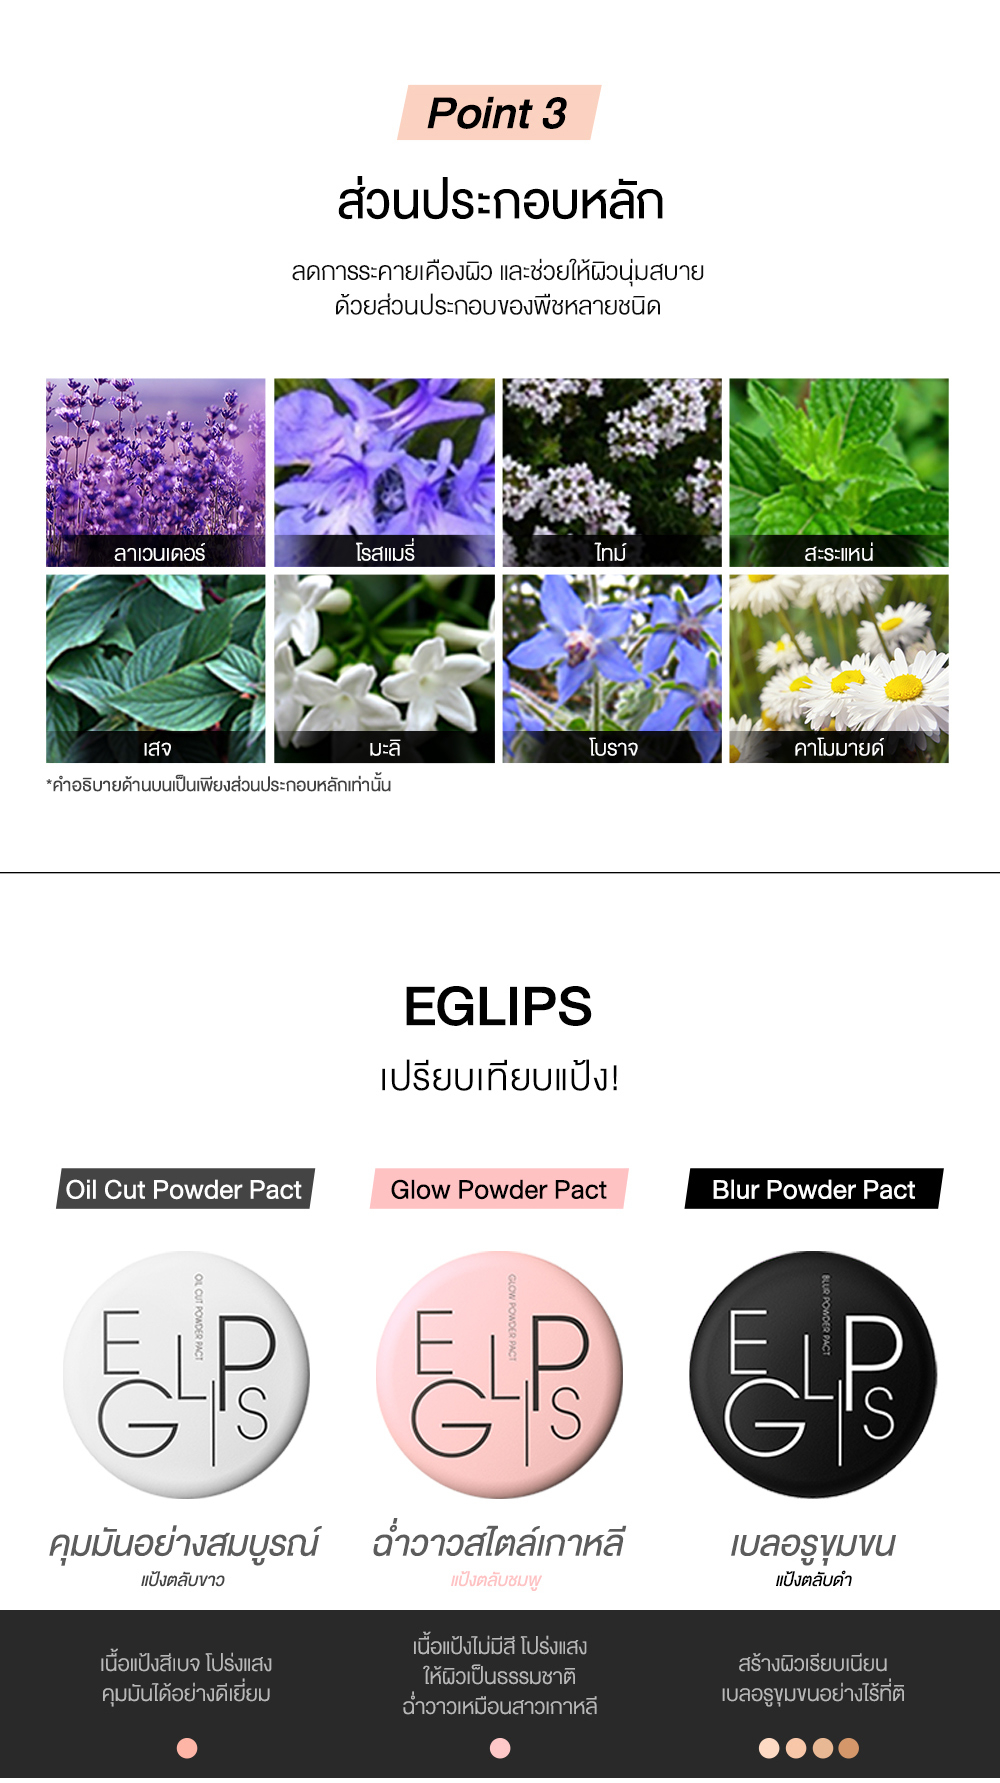 เกี่ยวกับสินค้า Eglips Blur Powder Pact & Eglips Melly Glass Tint อีกลิปส์ (แป้งดำ, แป้งเบลอรูขุมขน, แป้งพัฟ, ลิปสติก, ลิปทินท์)